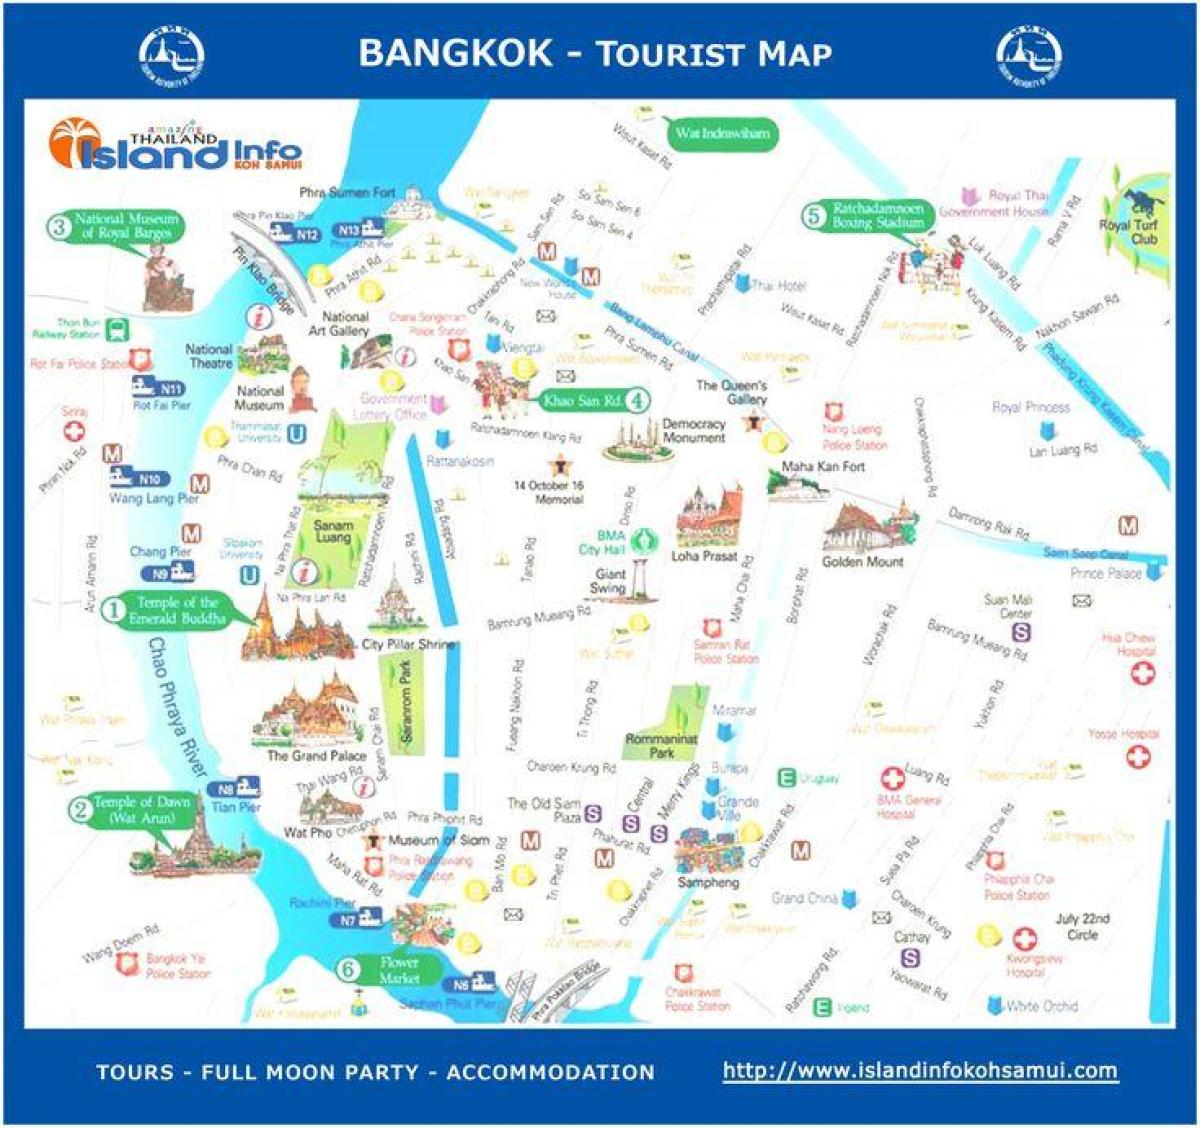 बैंकाक थाईलैंड के पर्यटन मानचित्र